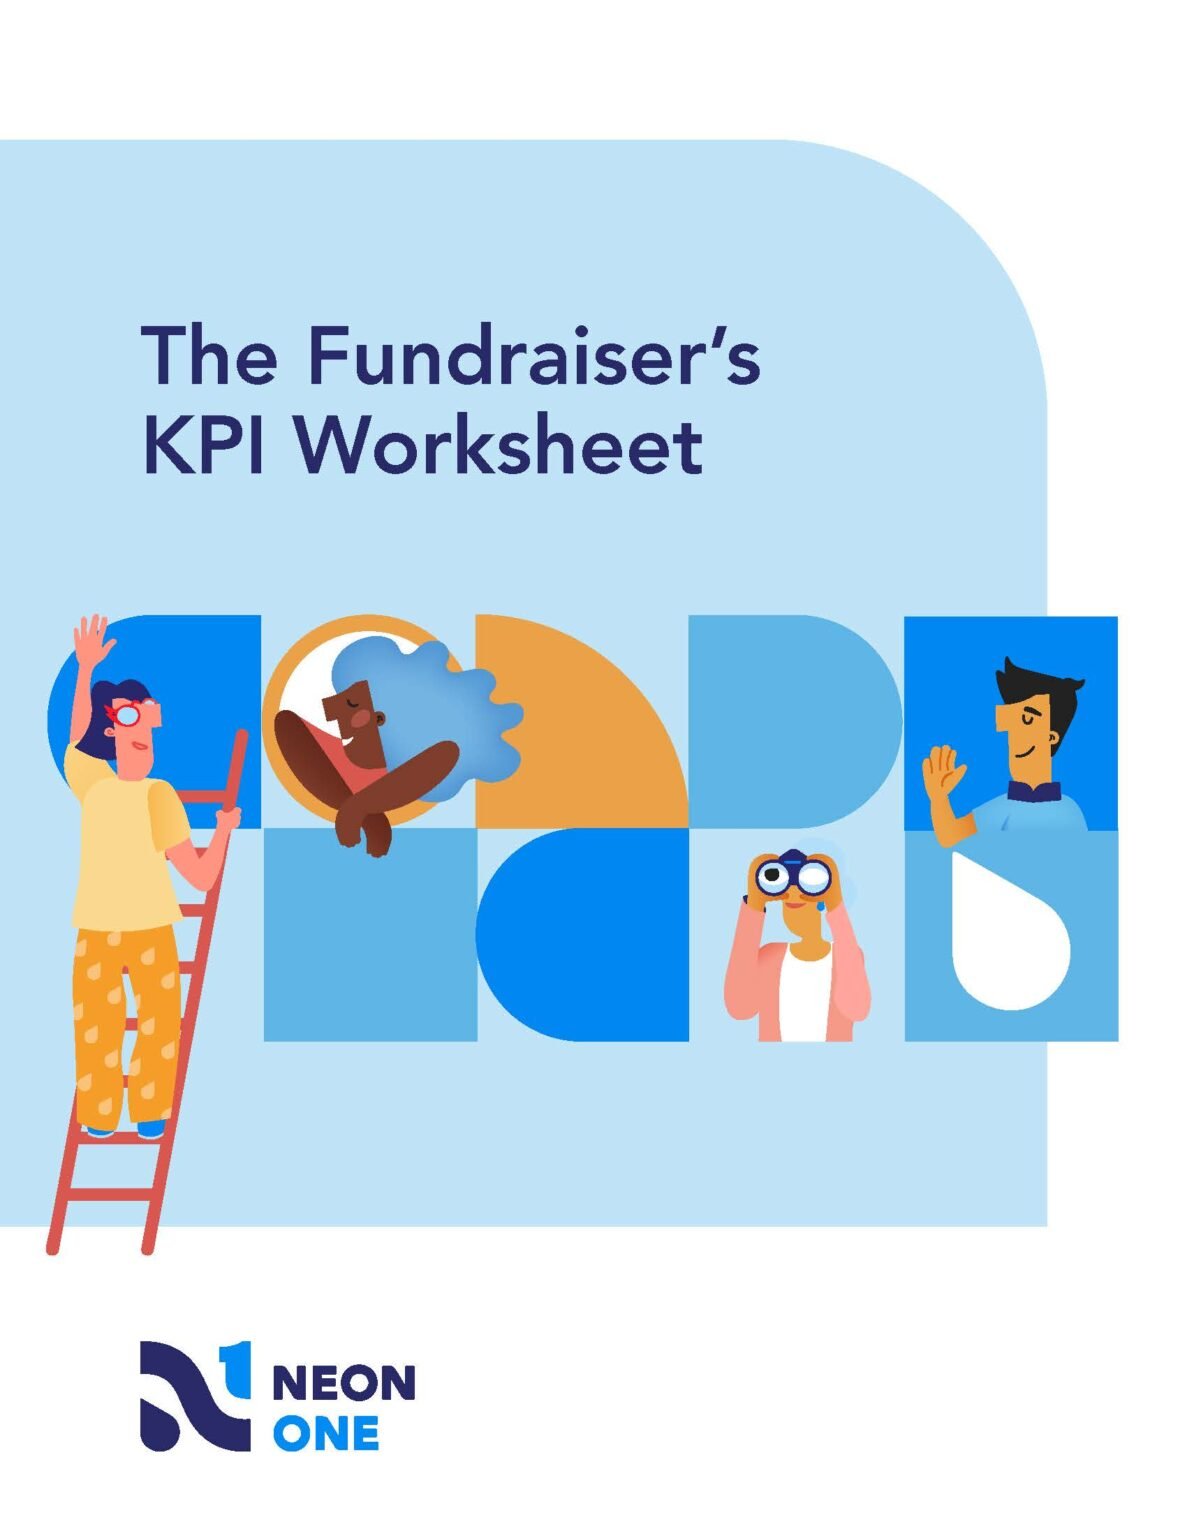 The Fundraiser’s KPI Worksheet